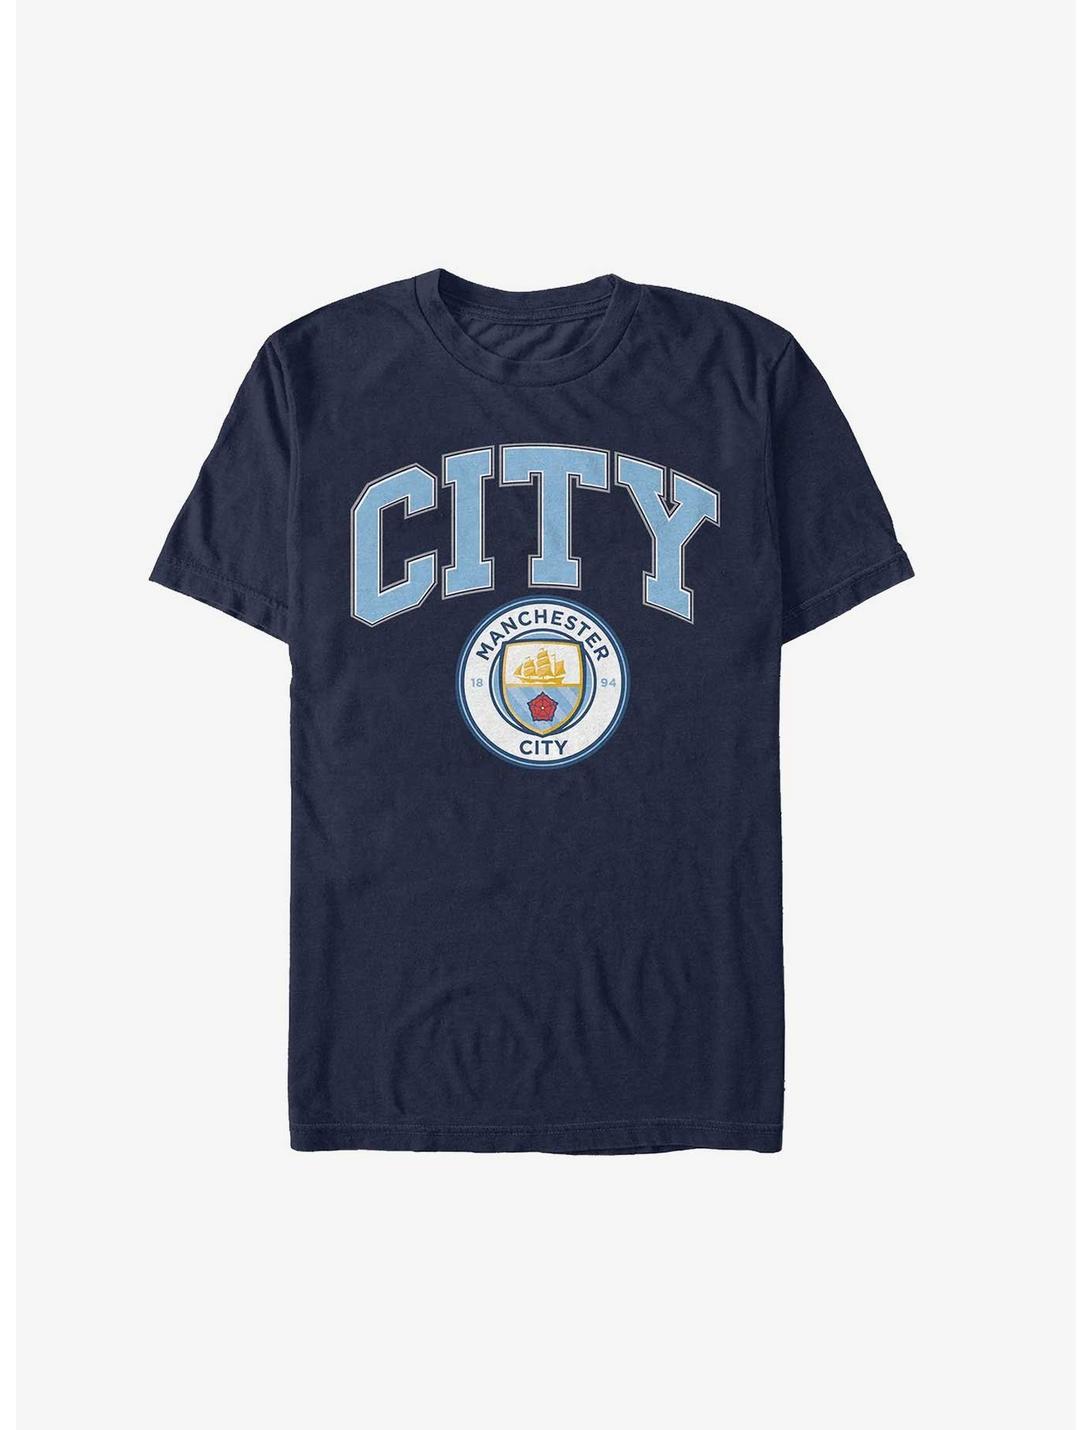 Premier League Manchester City F.C. City T-Shirt, NAVY, hi-res